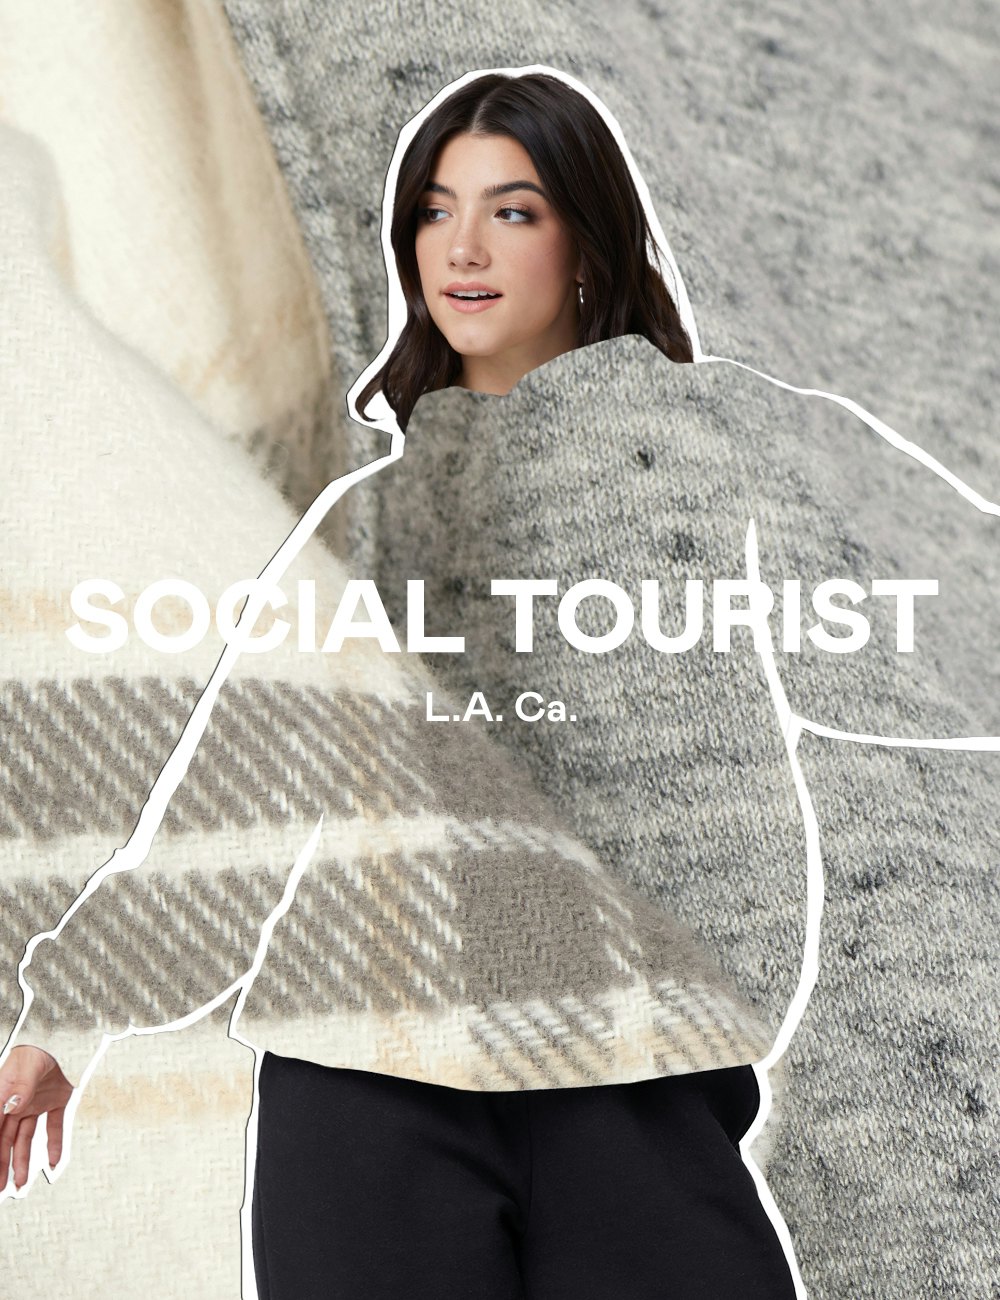 Charli, Dixie D'Amelio Host TikTok Fashion Show For Their 'Social Tourist' Clothing  Brand - Tubefilter